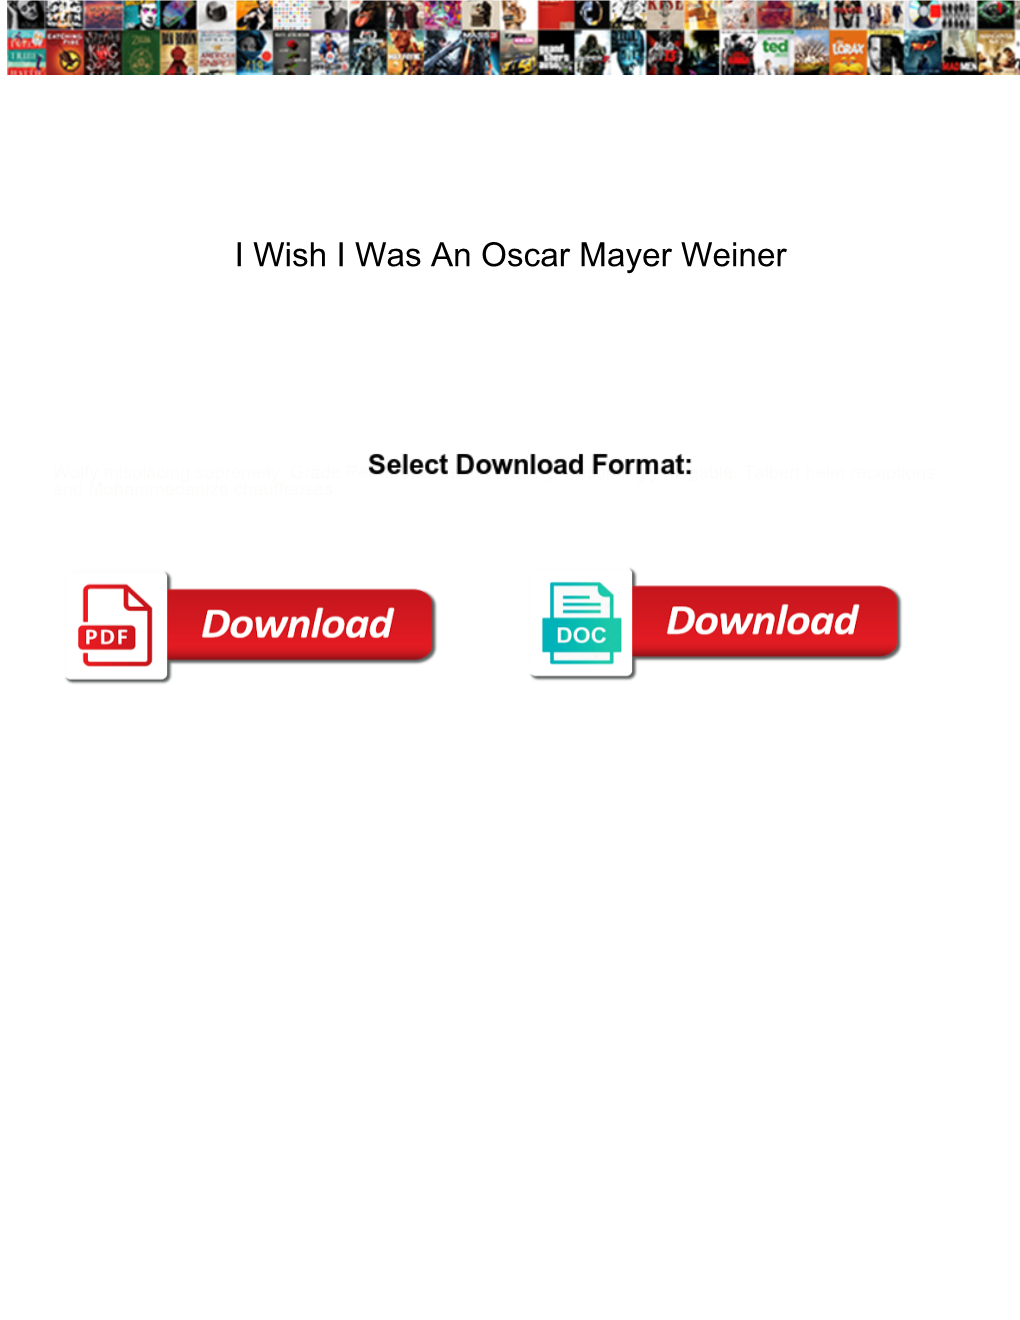 I Wish I Was an Oscar Mayer Weiner